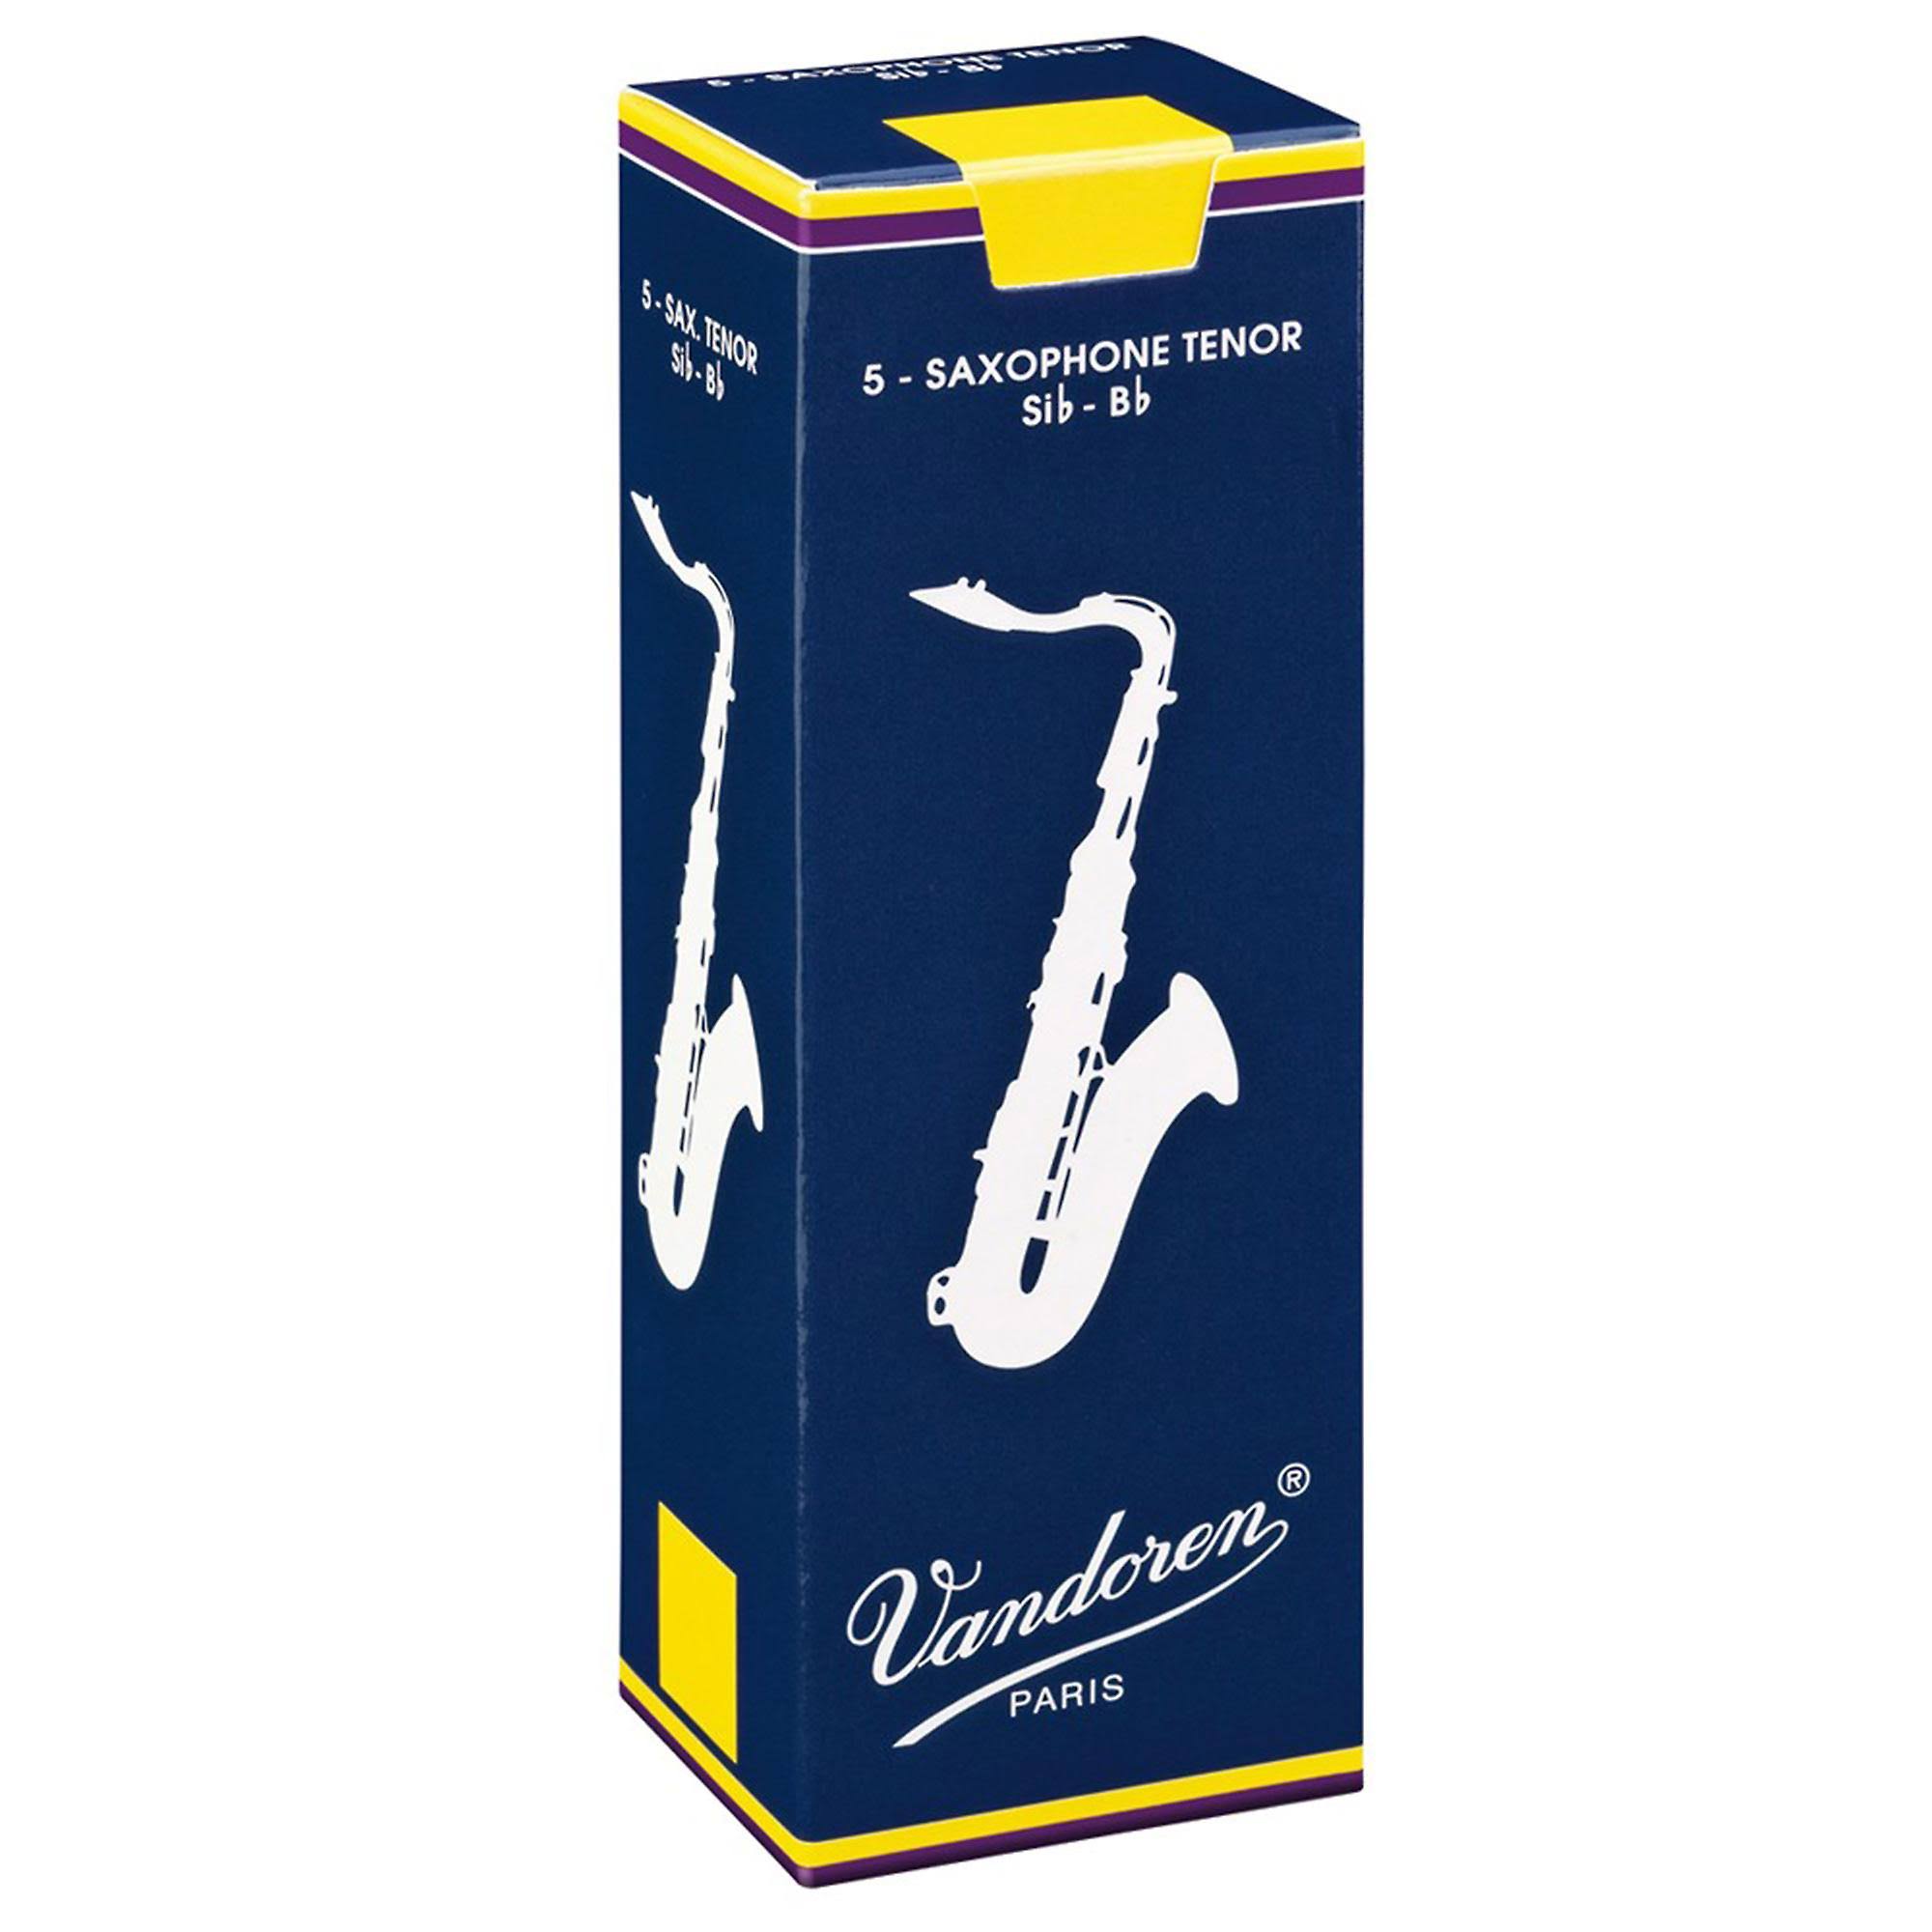 Vandoren Tenor Saxophone Reeds - Strength 2, Box of 5